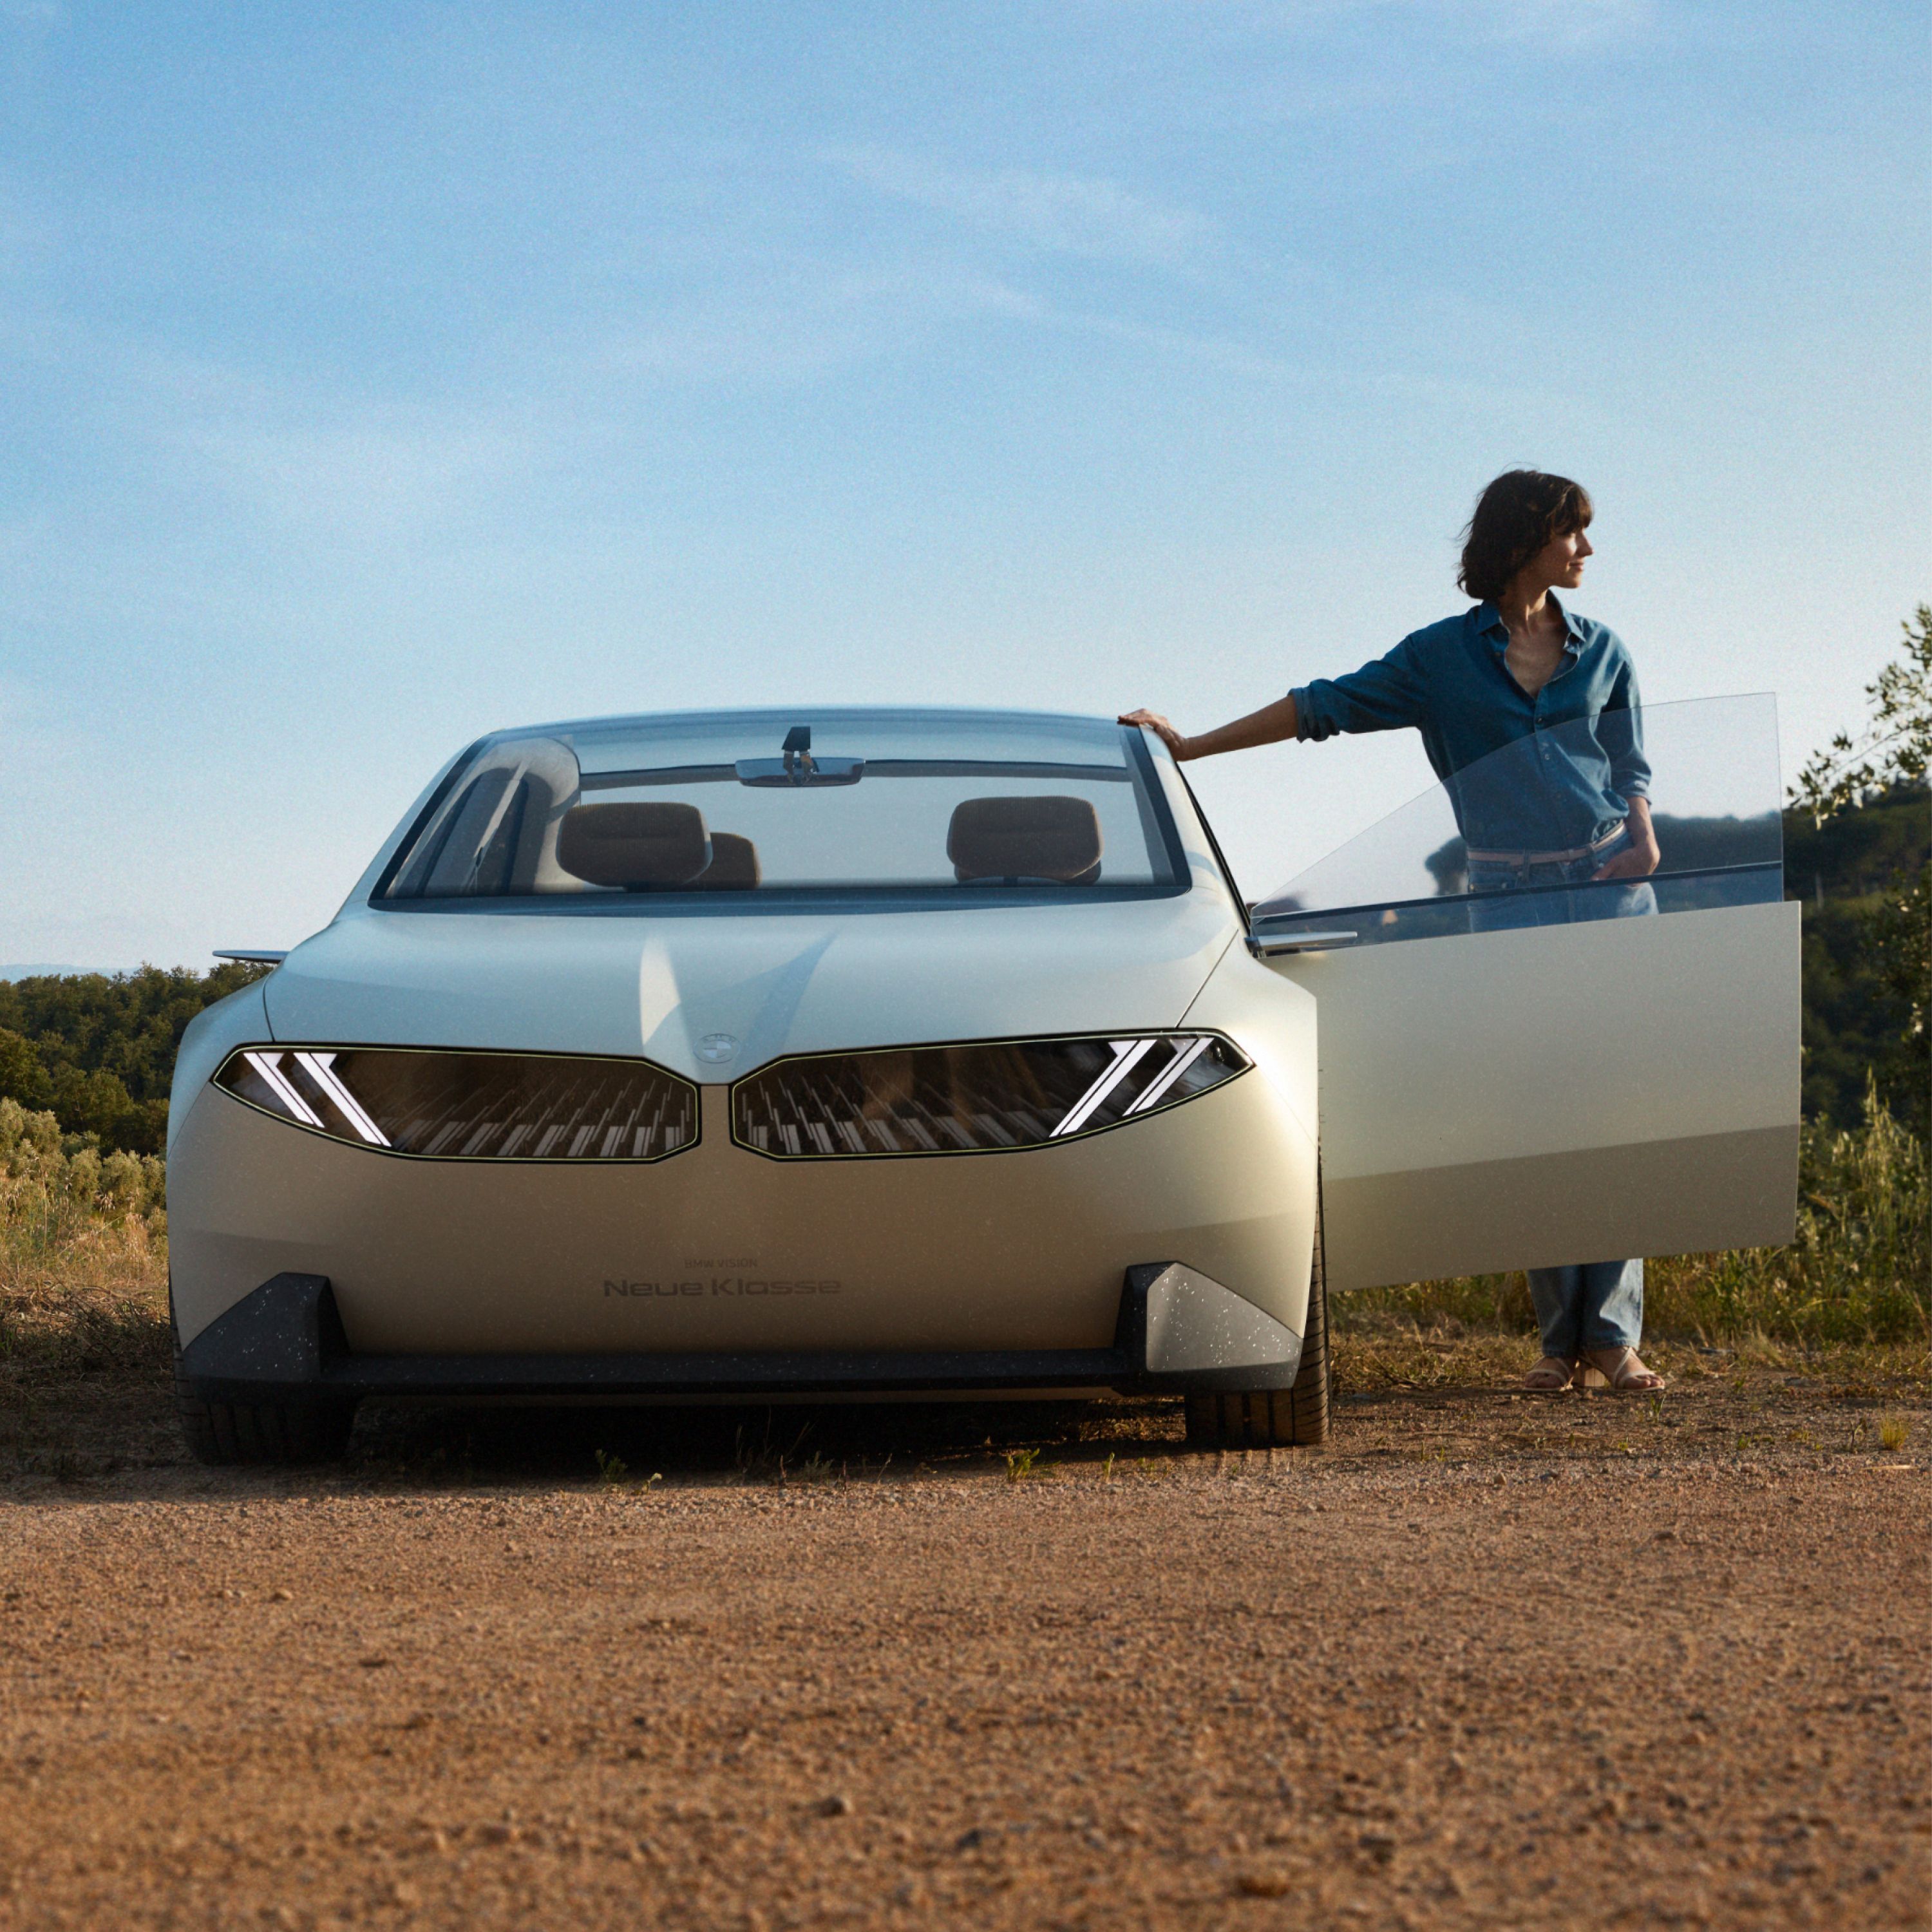 BMW Vision Neue Klasse Konzeptfahrzeug 2023, Exterieur, Frontansicht, parkend in Wüste, Tür offen, mit Frau